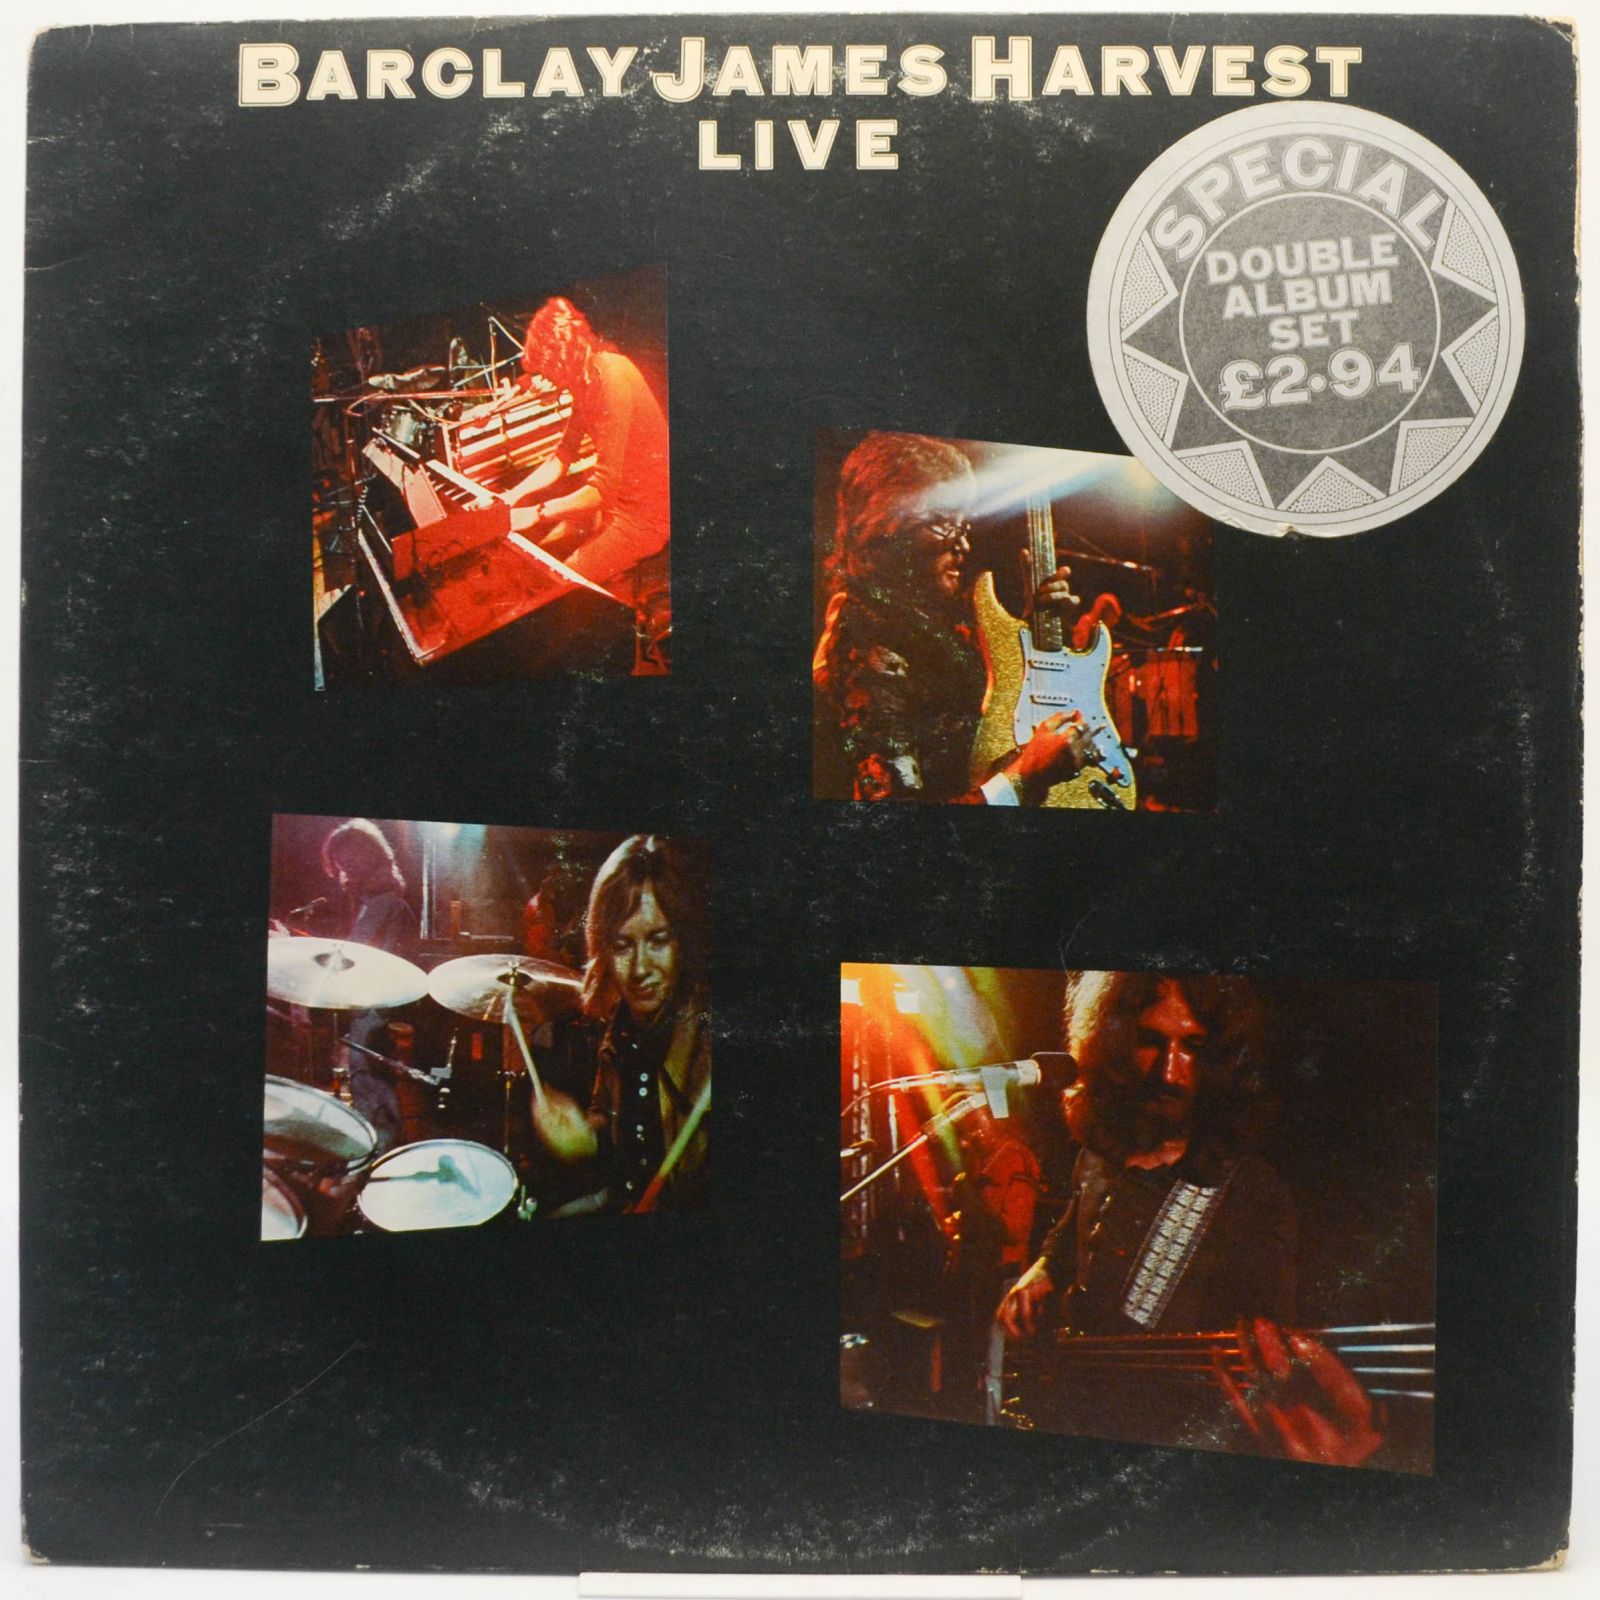 Barclay James Harvest — Live (2LP, UK), 1974